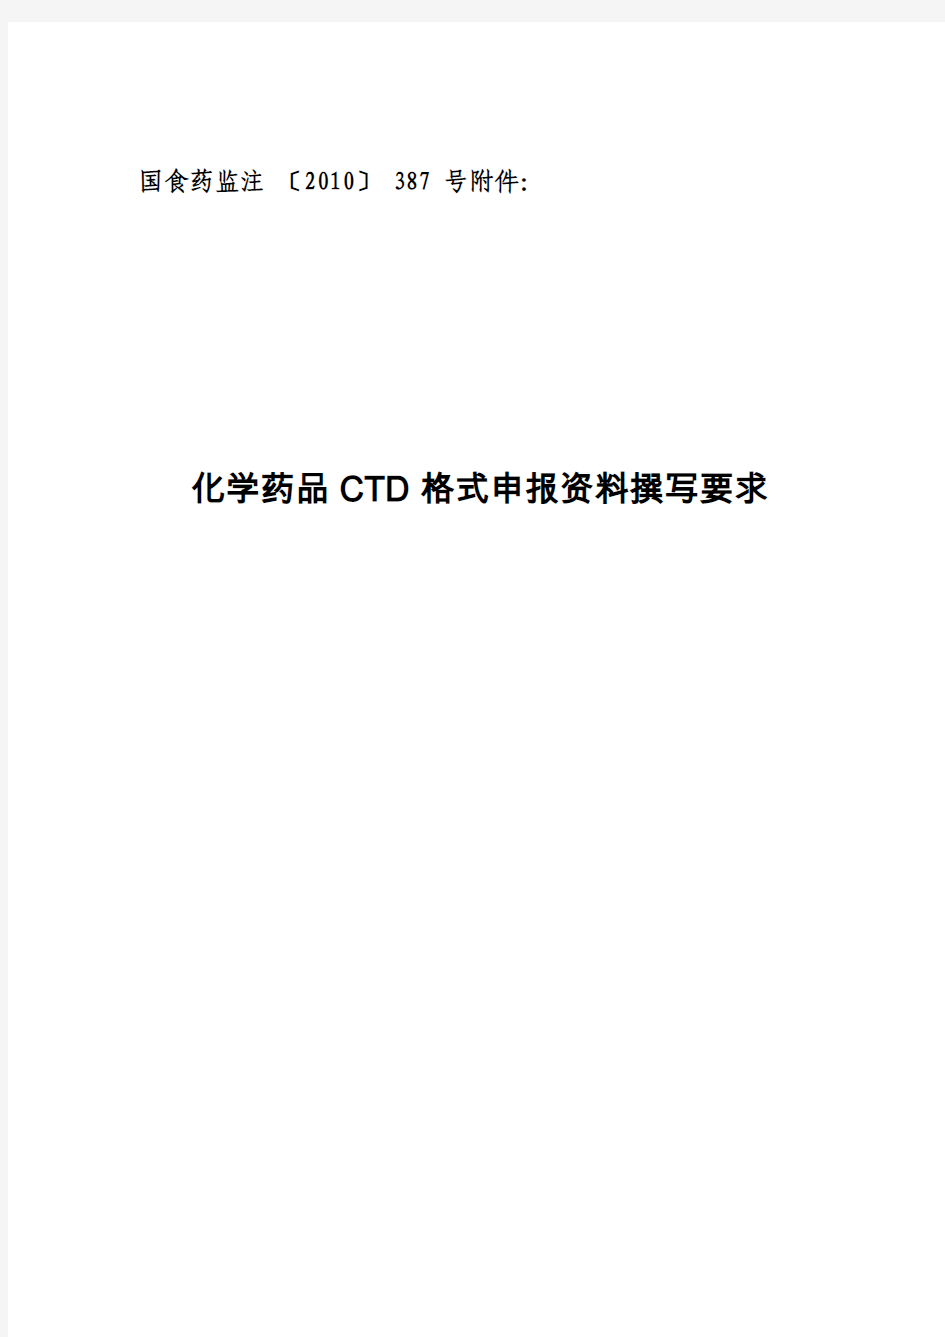 化学药品 CTD格式申报资料撰写要求